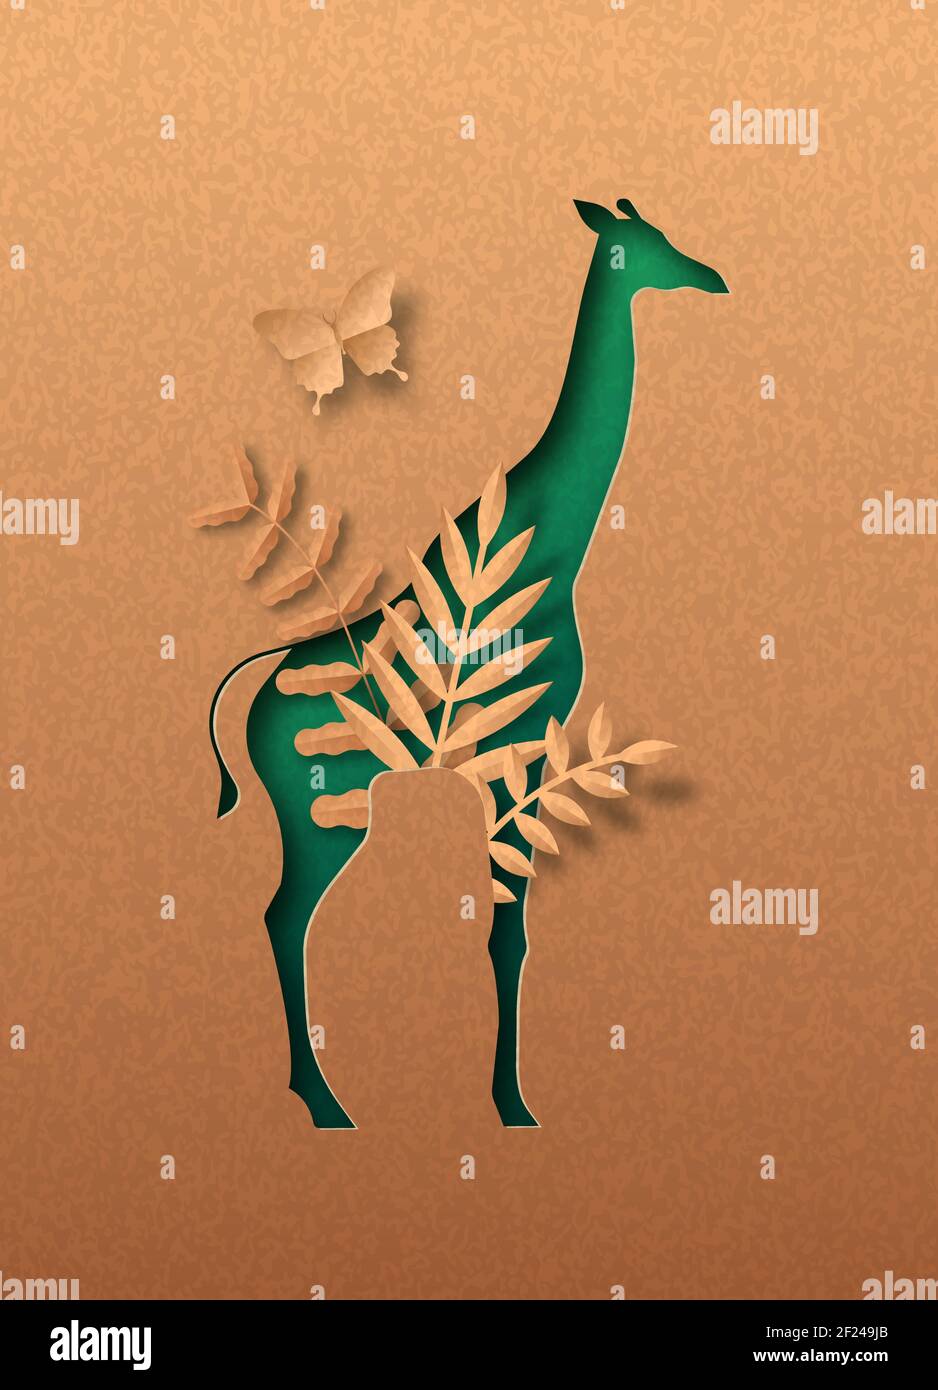 Giraffa verde isolato animale silhouette in papercut con foglia di pianta tropicale all'interno. Carta riciclata texture taglio concetto per africa safari, fauna selvatica c Illustrazione Vettoriale